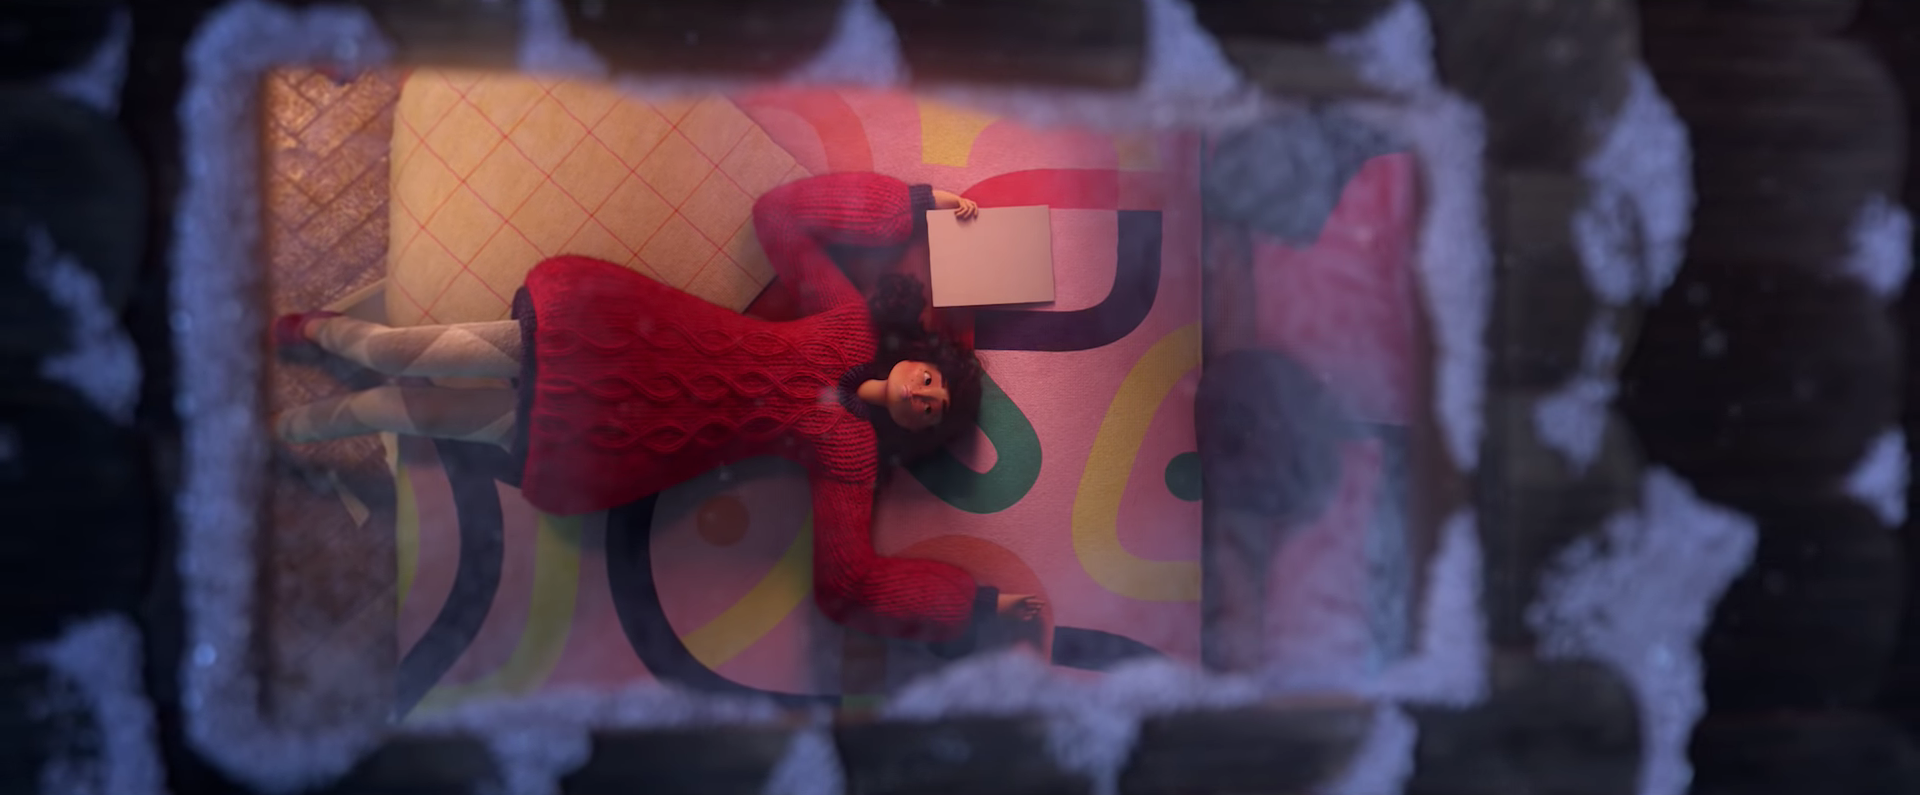 Lagrimita mil: Checa el nuevo comercial navideño de Apple al estilo Pixar